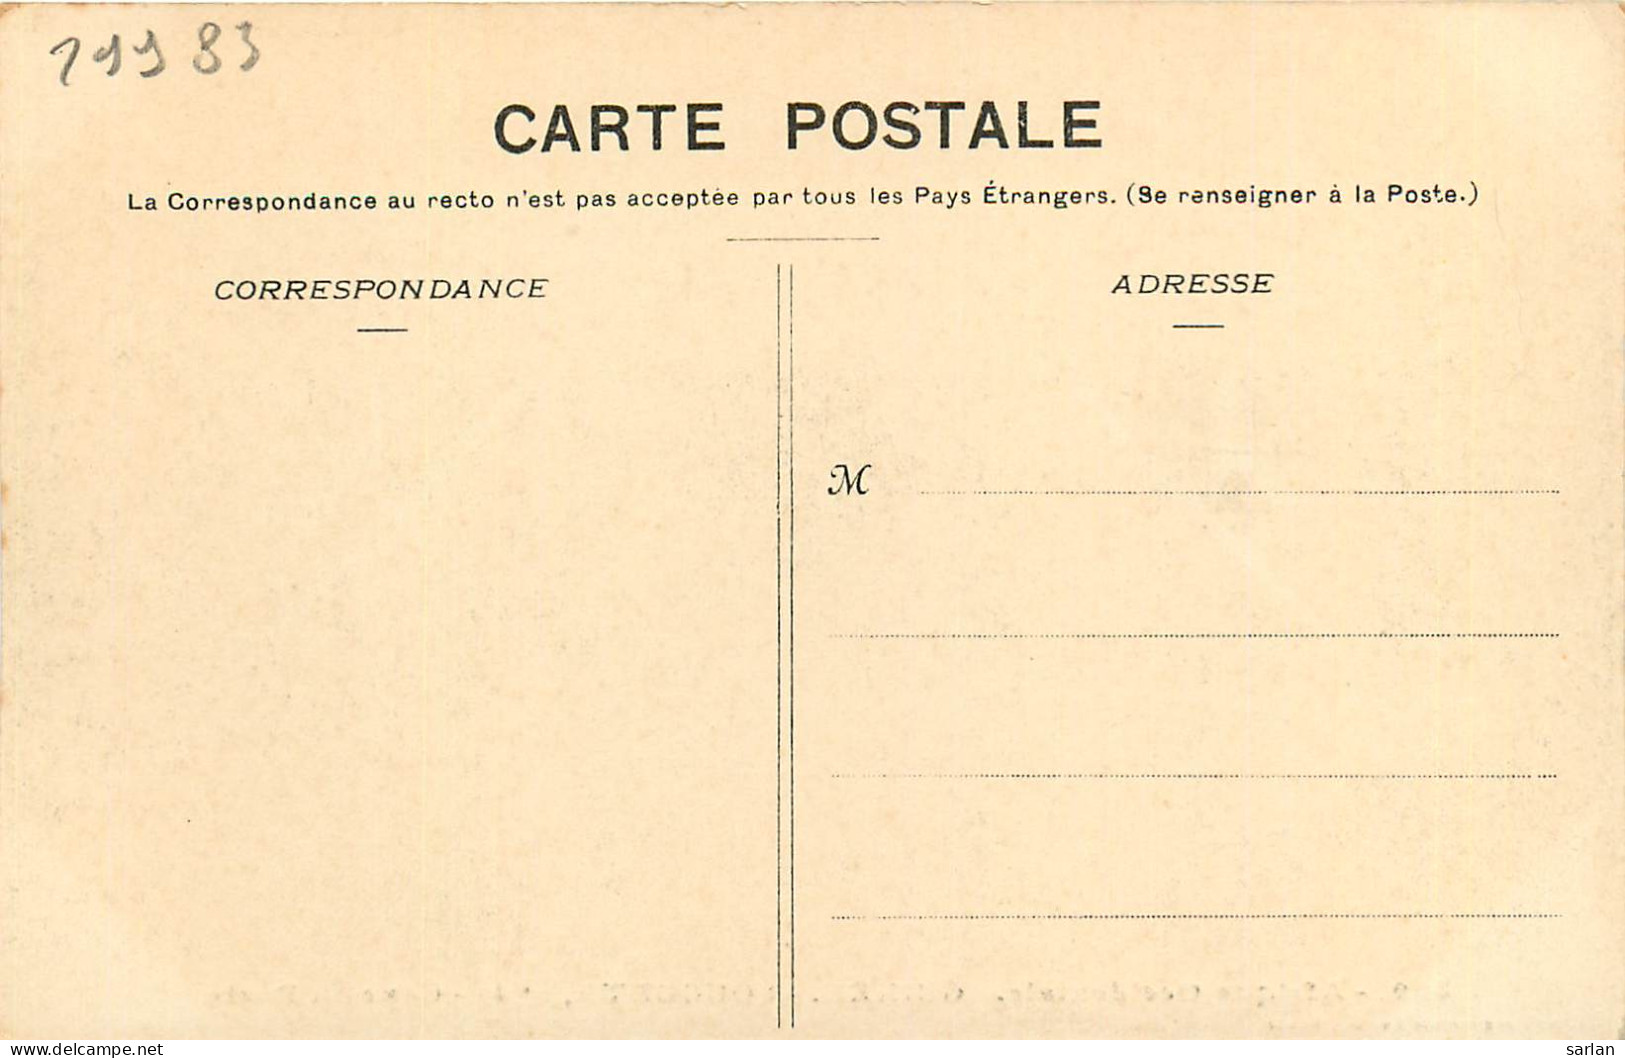  AOF , GUINEE FRANCAISE , Fortier N° 599 , SOUGUETA , Cour Du Poste ,  * 299 83 - Guinée Française